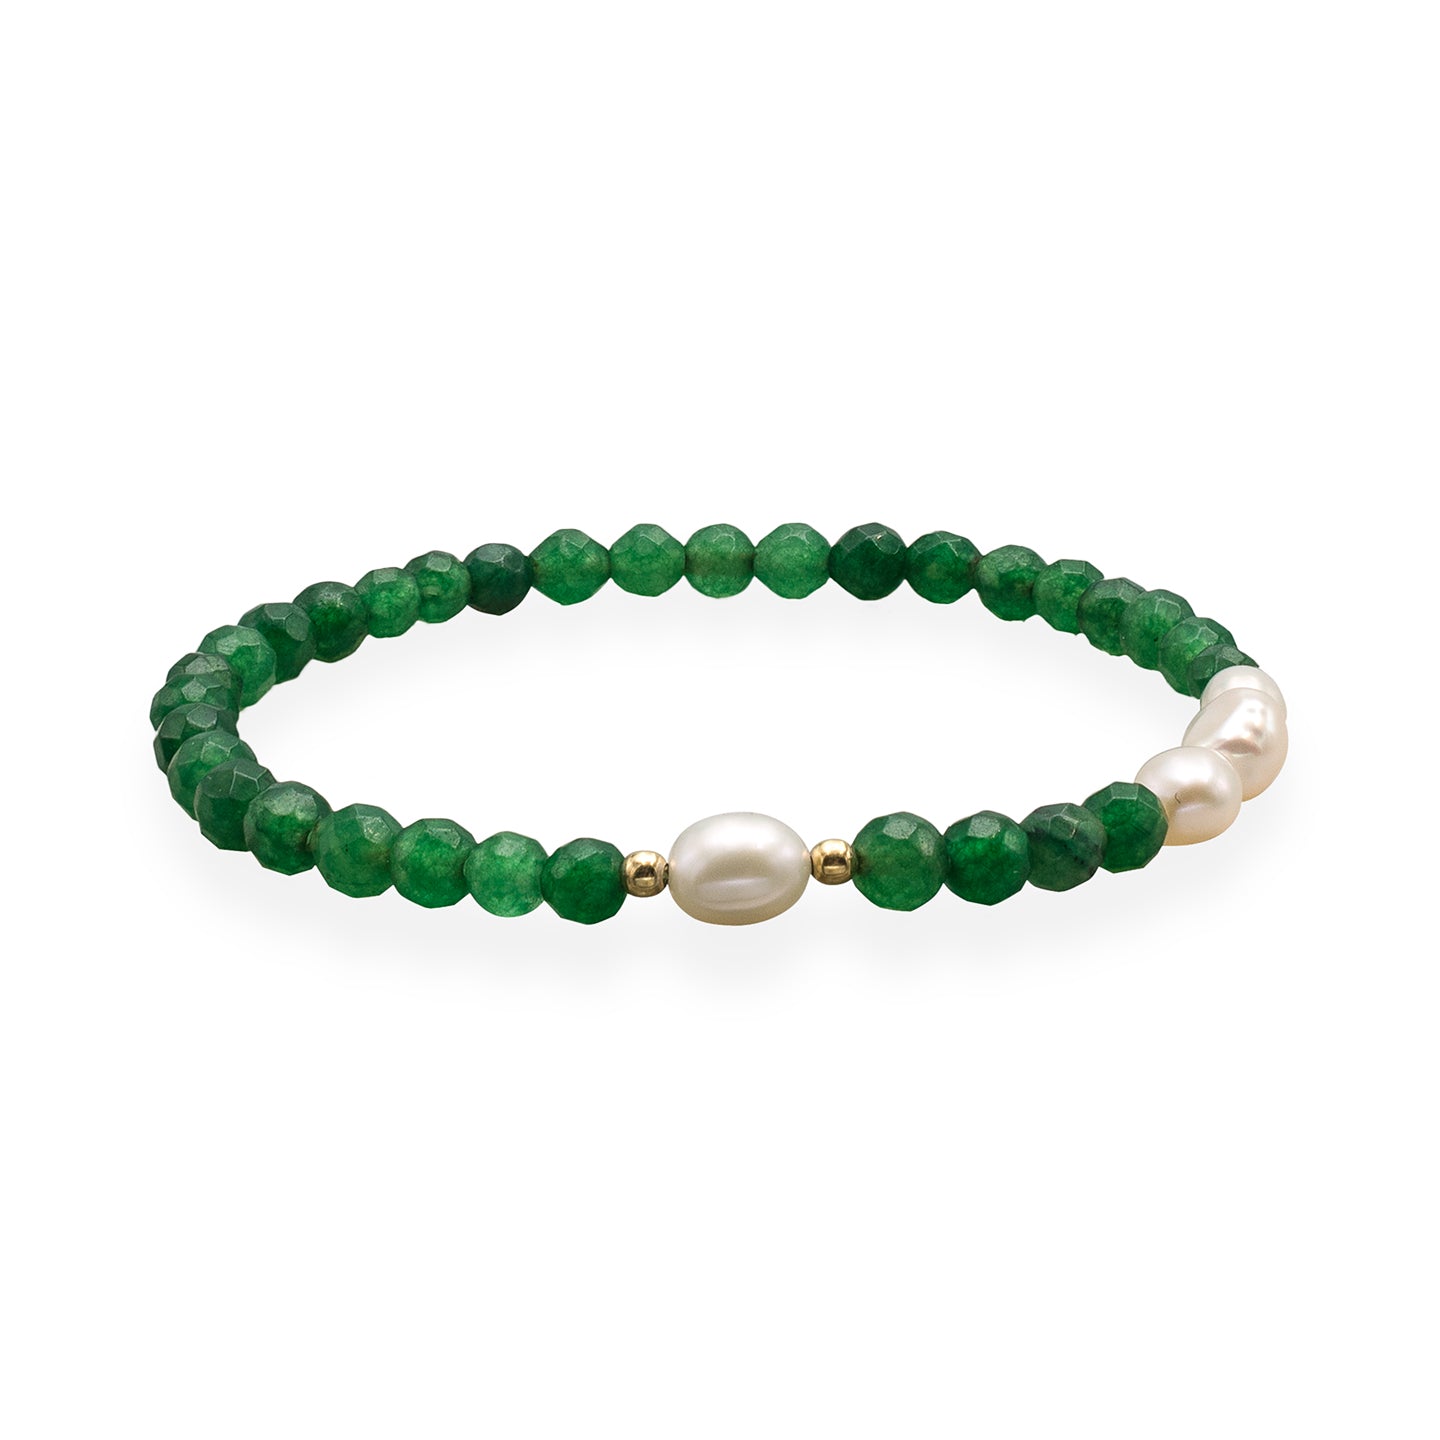 Bratara argint cu perle si agat verde smarald Green Spirit - placata aur galben 18K